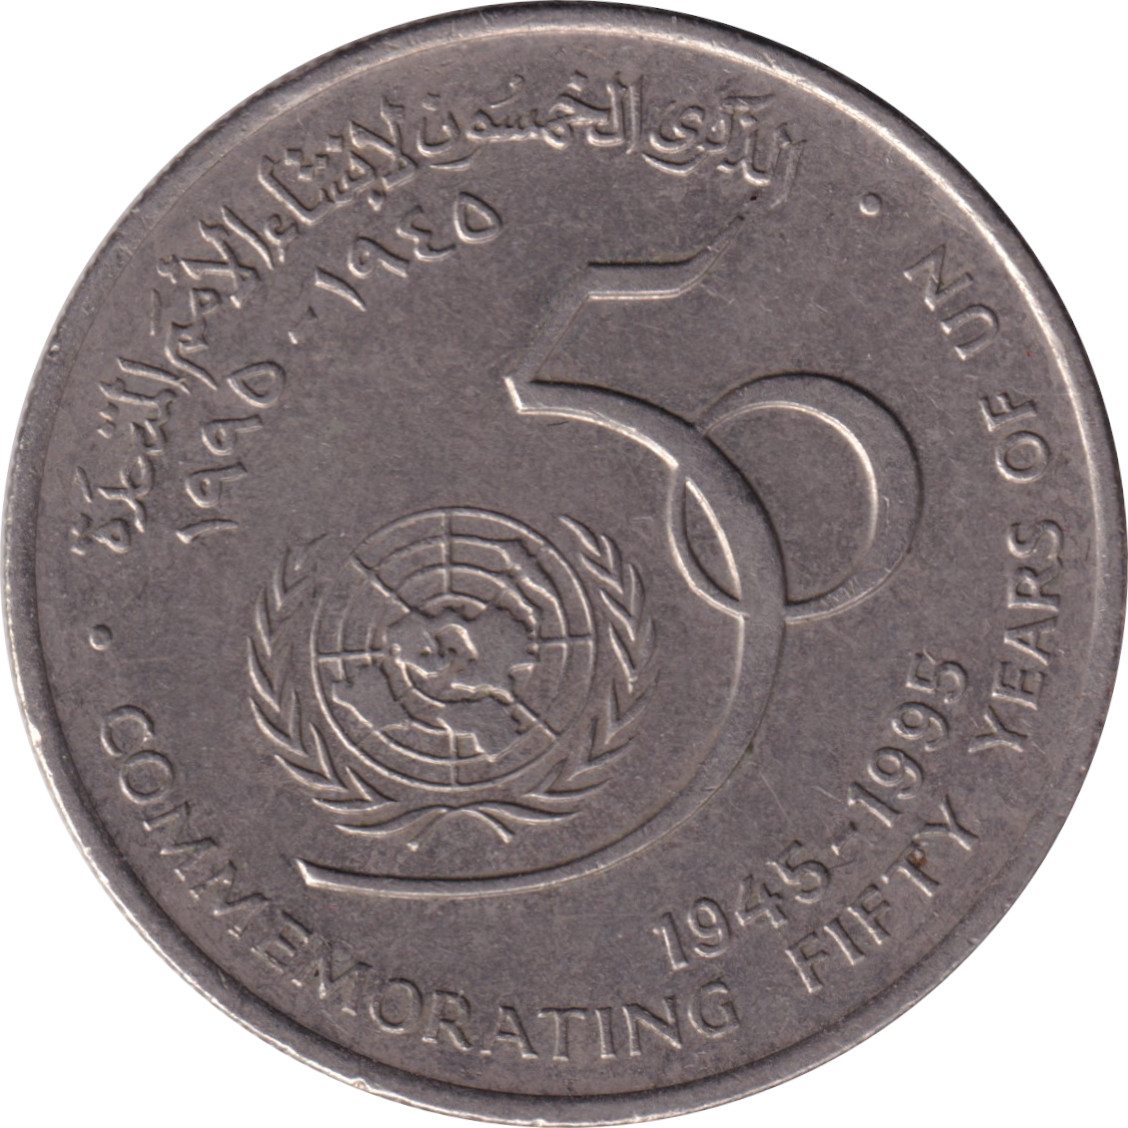 50 baisa - Nations unies - 50 years